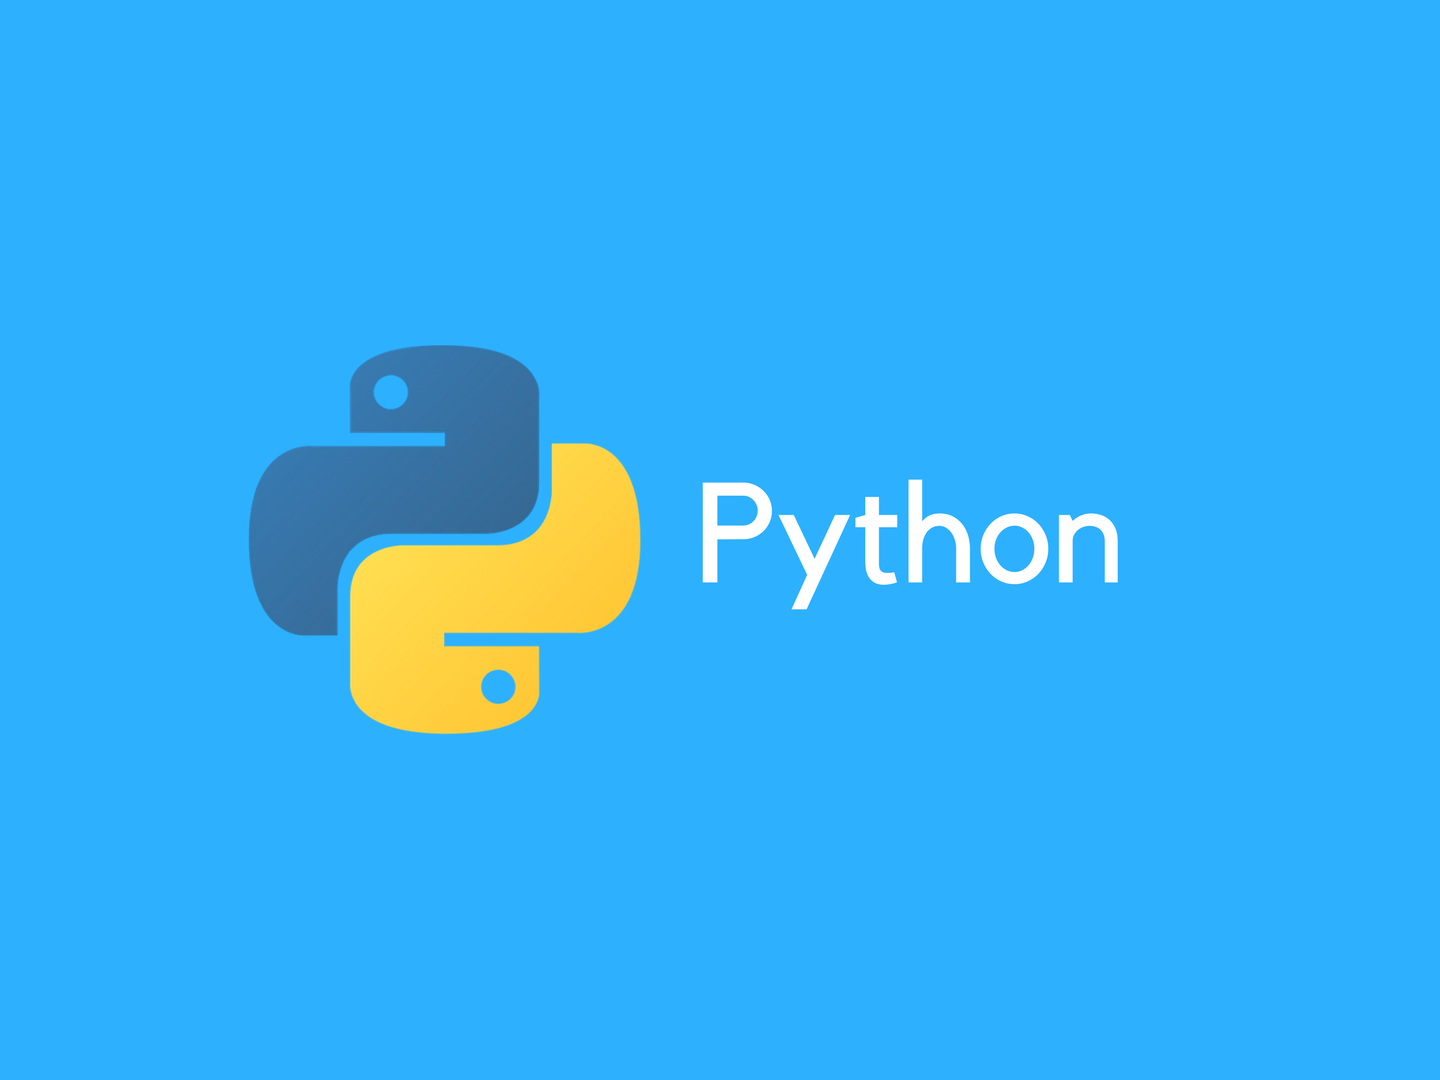 Reply python. Python. Питон программирование. Python картинки. Пион язык программирования.